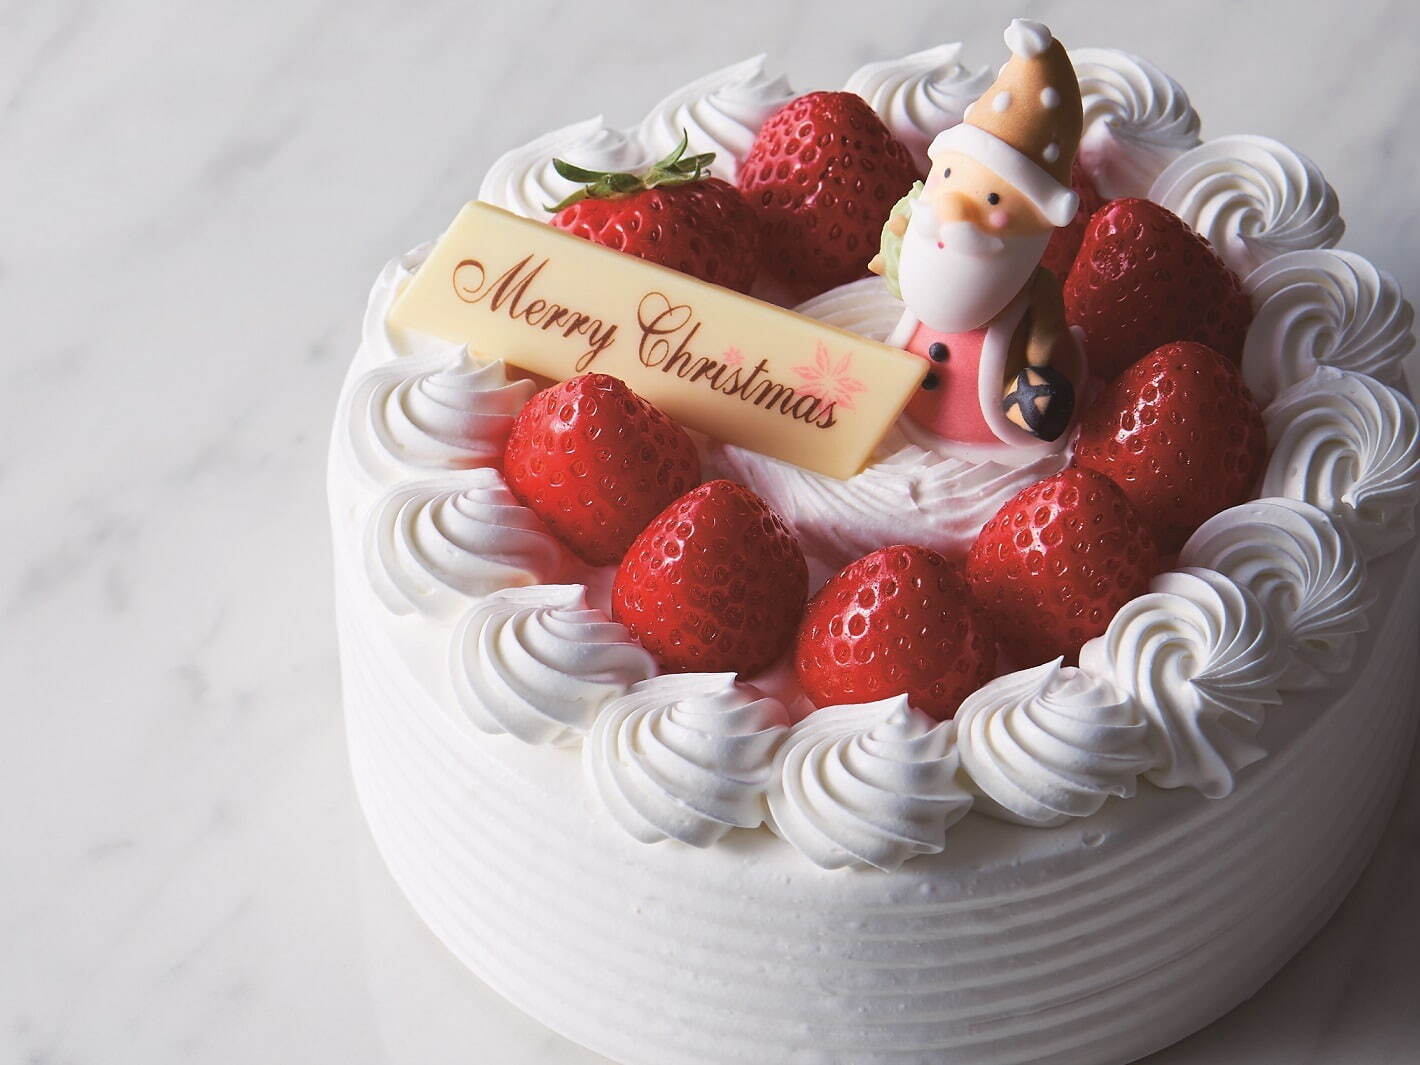 クリスマスショートケーキ(直径15cm 高さ8cm) 6,000円